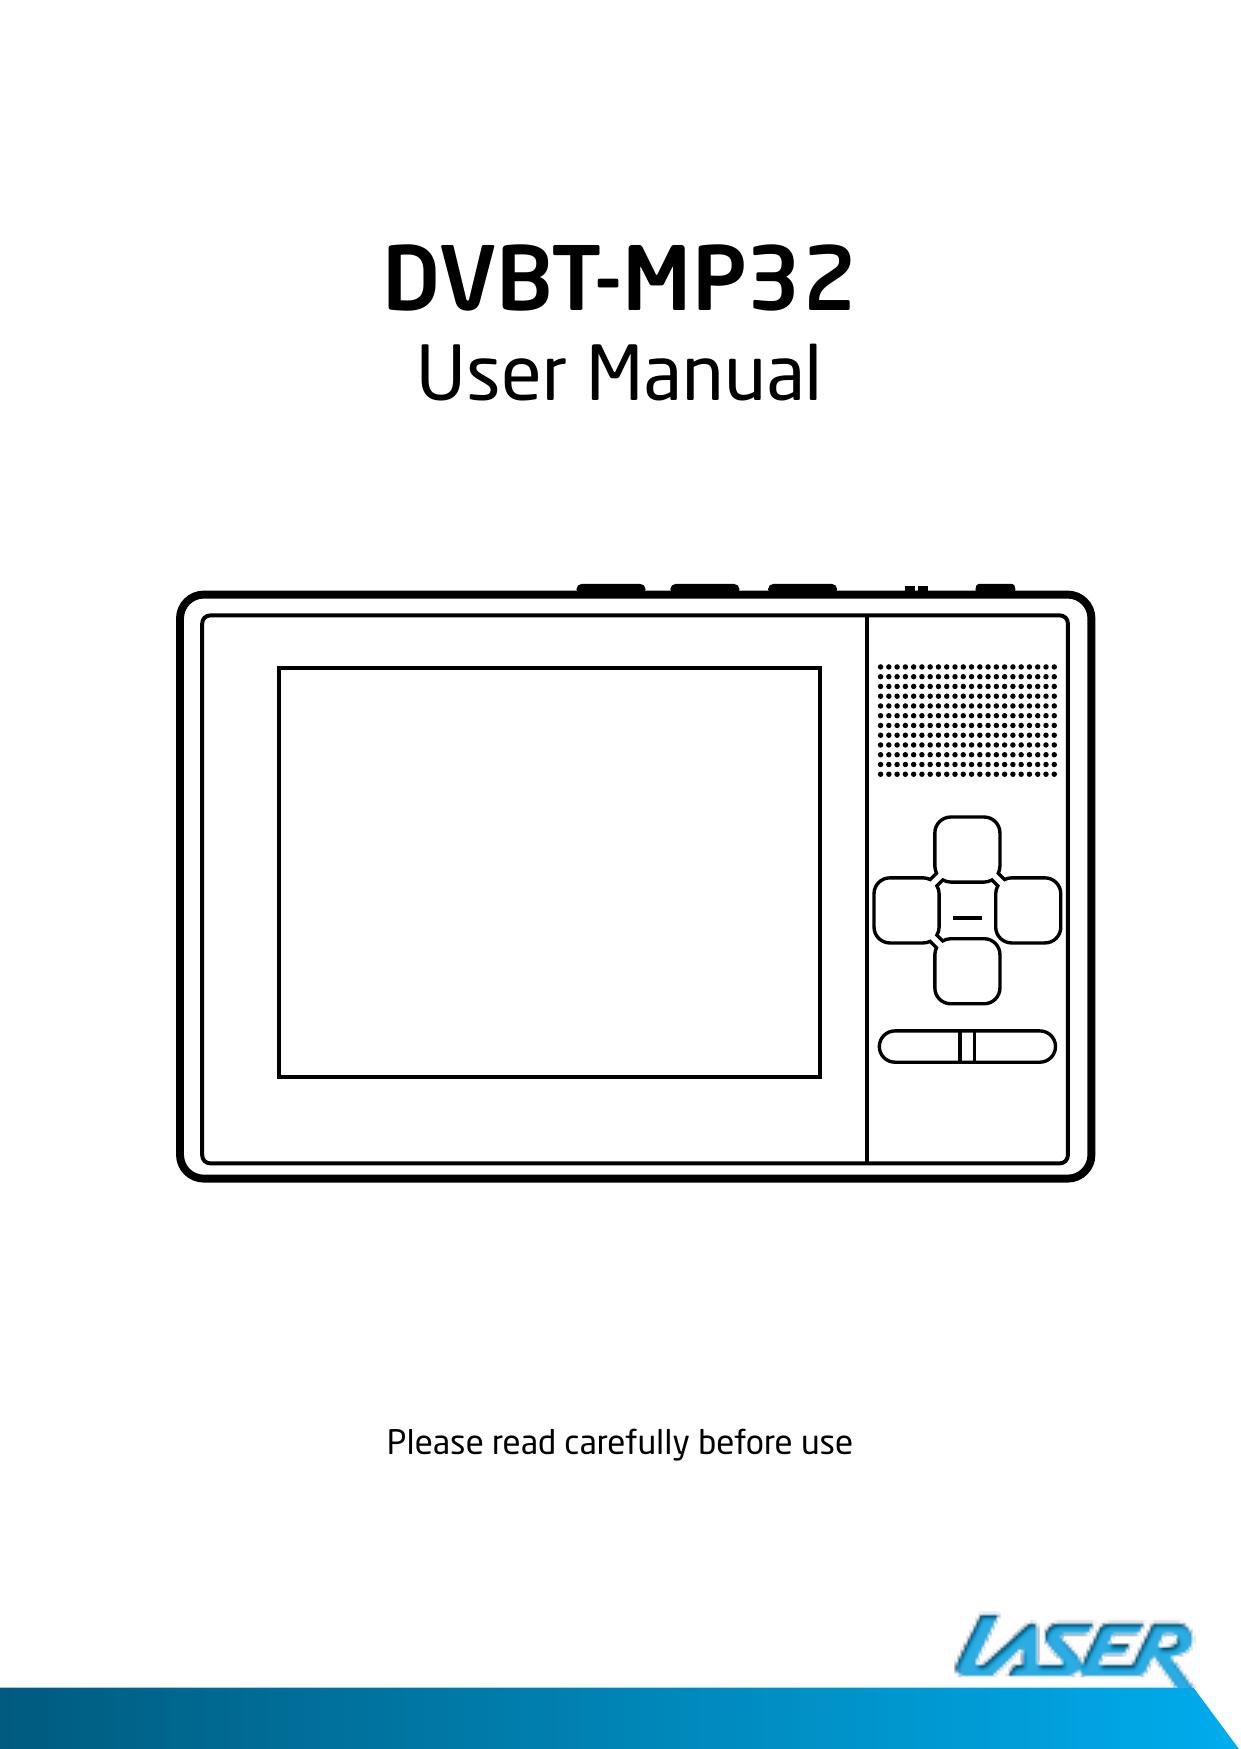 Laser DVBT-MP32 Handheld TV User Manual (Page 1)